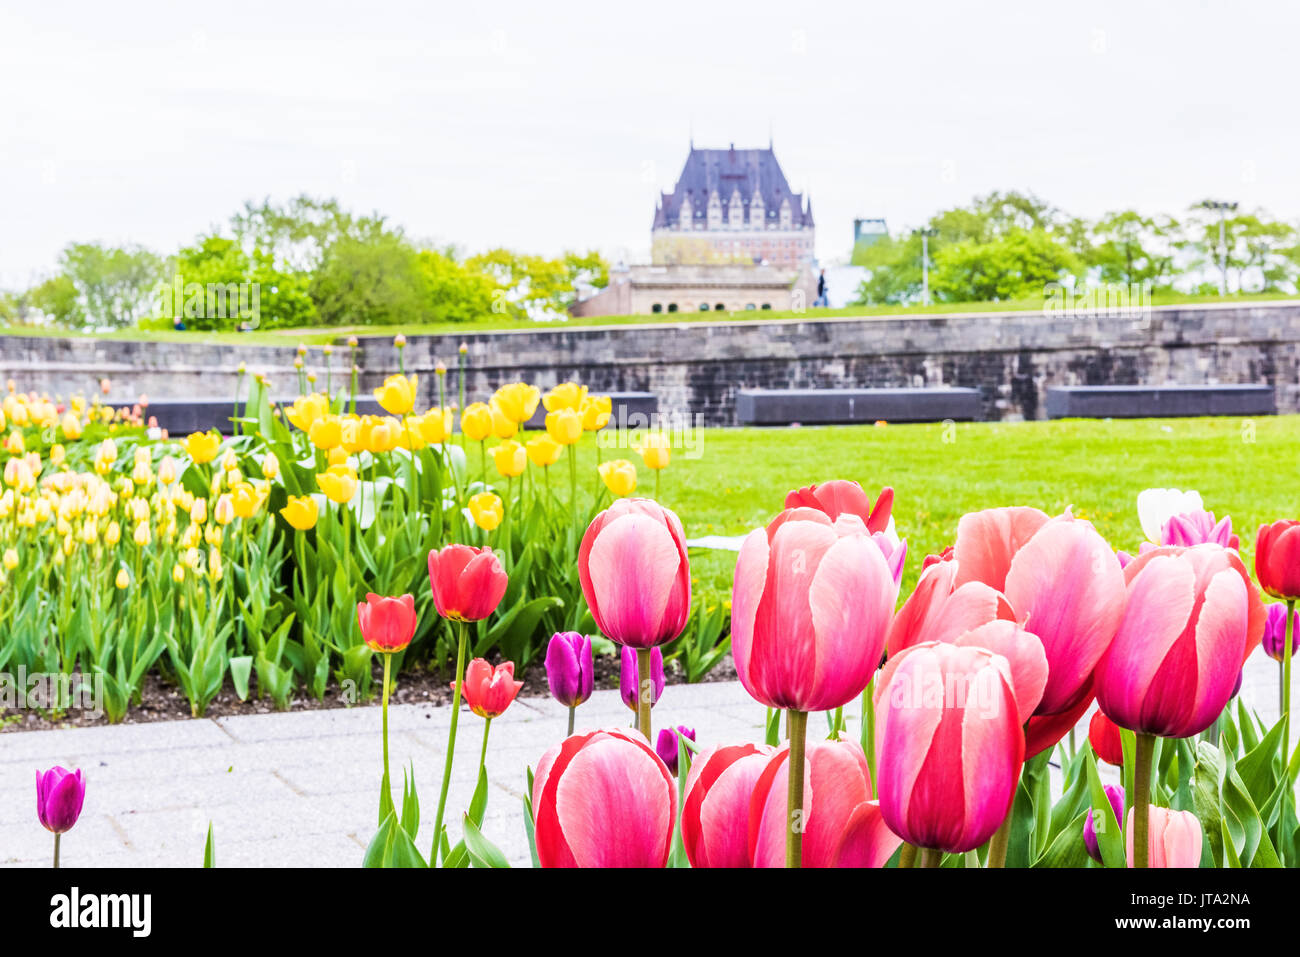 La città di Quebec, Canada - 29 Maggio 2017: verde erba dei campi con colorati fiori di tulipani nel parco con fortificazioni muro di pietra e paesaggio urbano o skyline vie Foto Stock